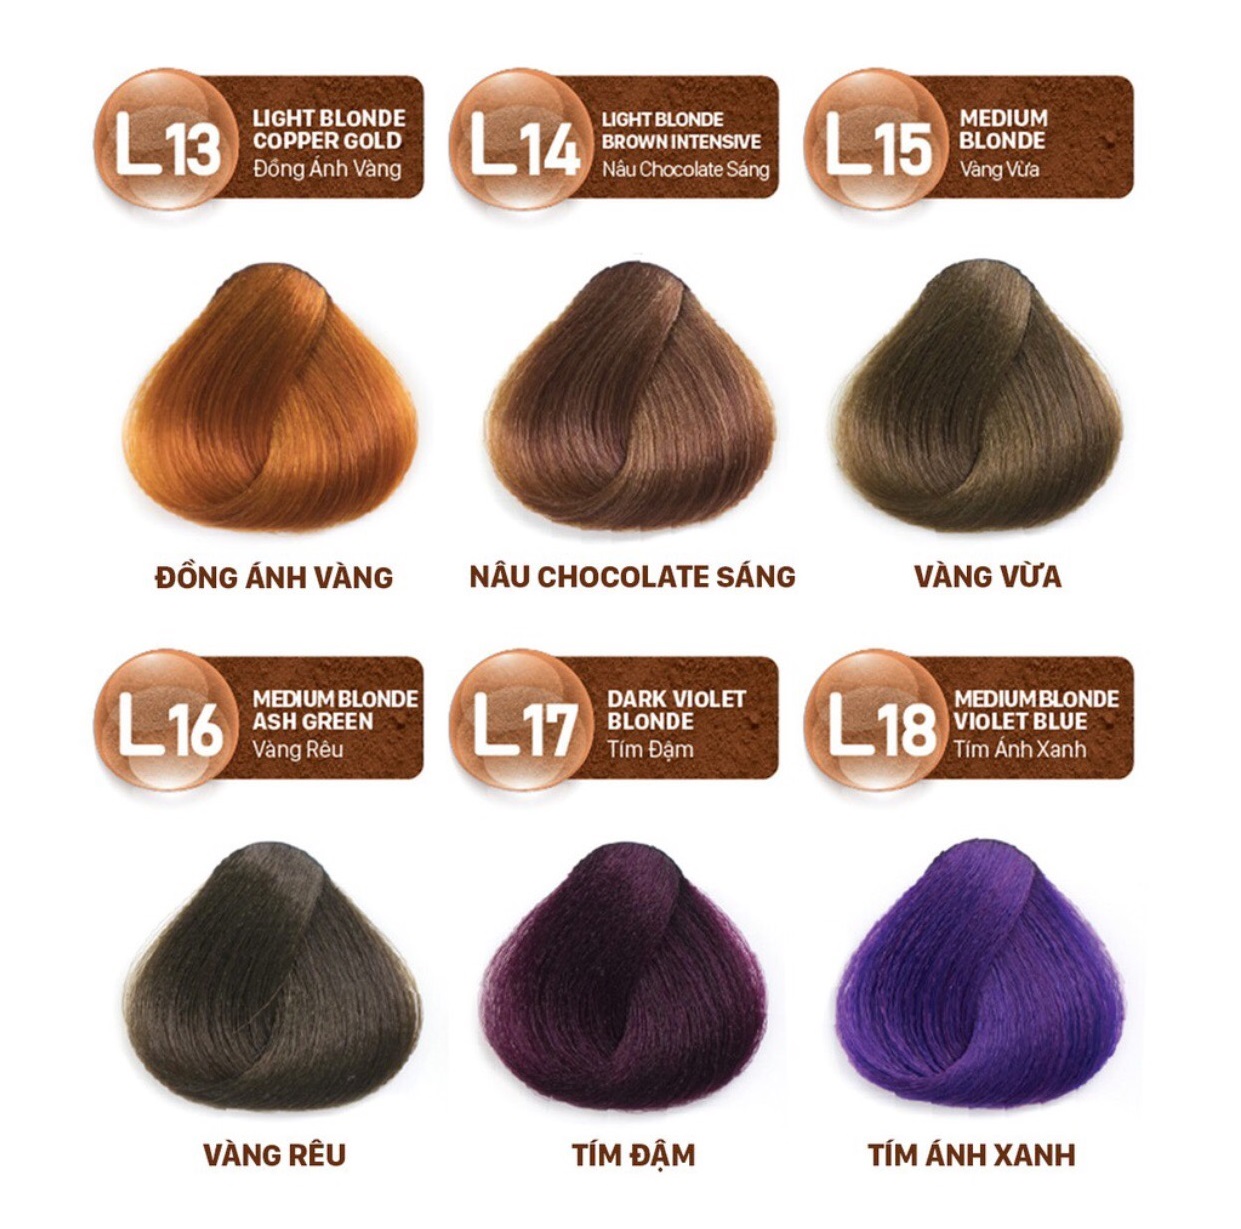 Nhuộm tóc màu thời trang với thành phần thiên nhiên Youth & Color Lavox - Gồm 18 màu nhuộm